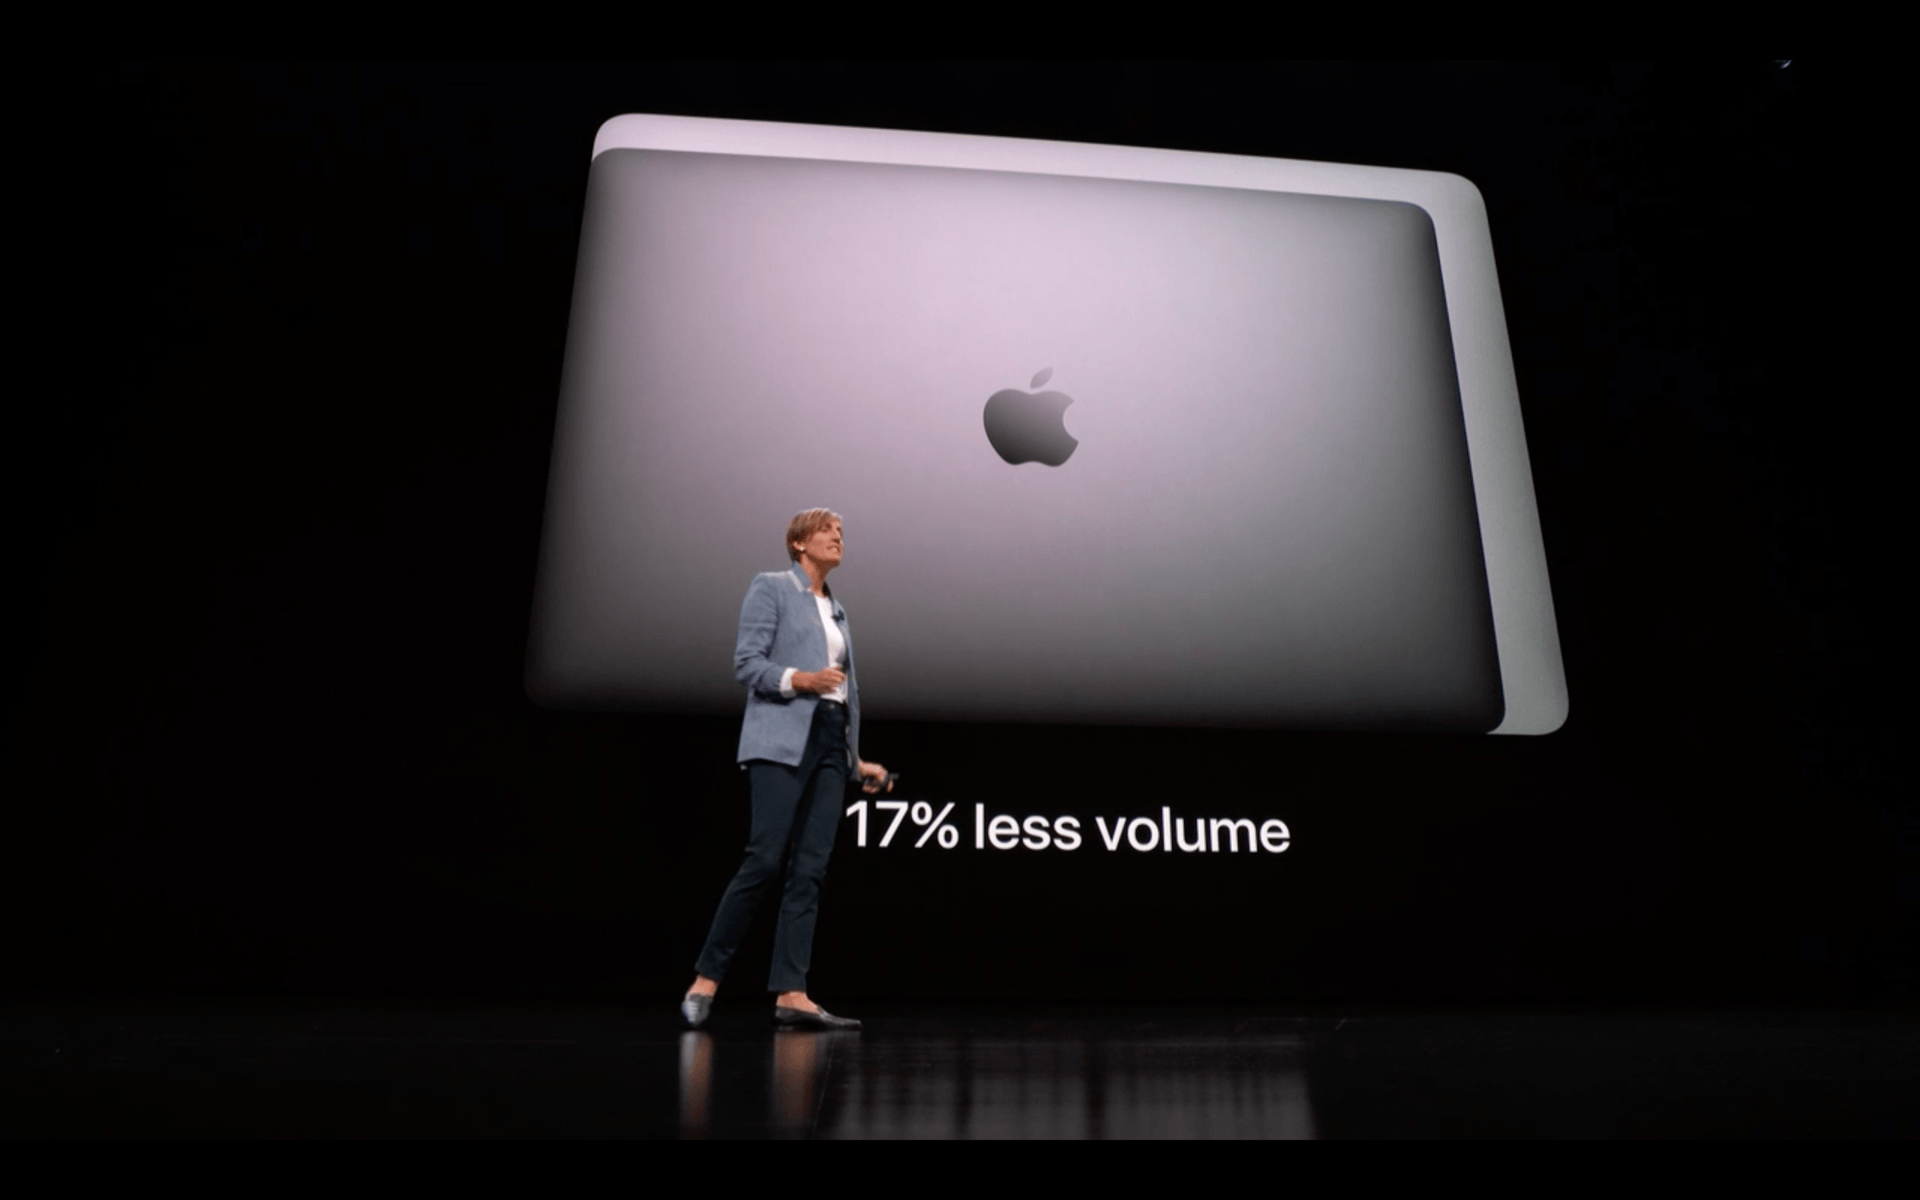 Appena presentato il nuovo MacBook Air totalmente riprogettato 6